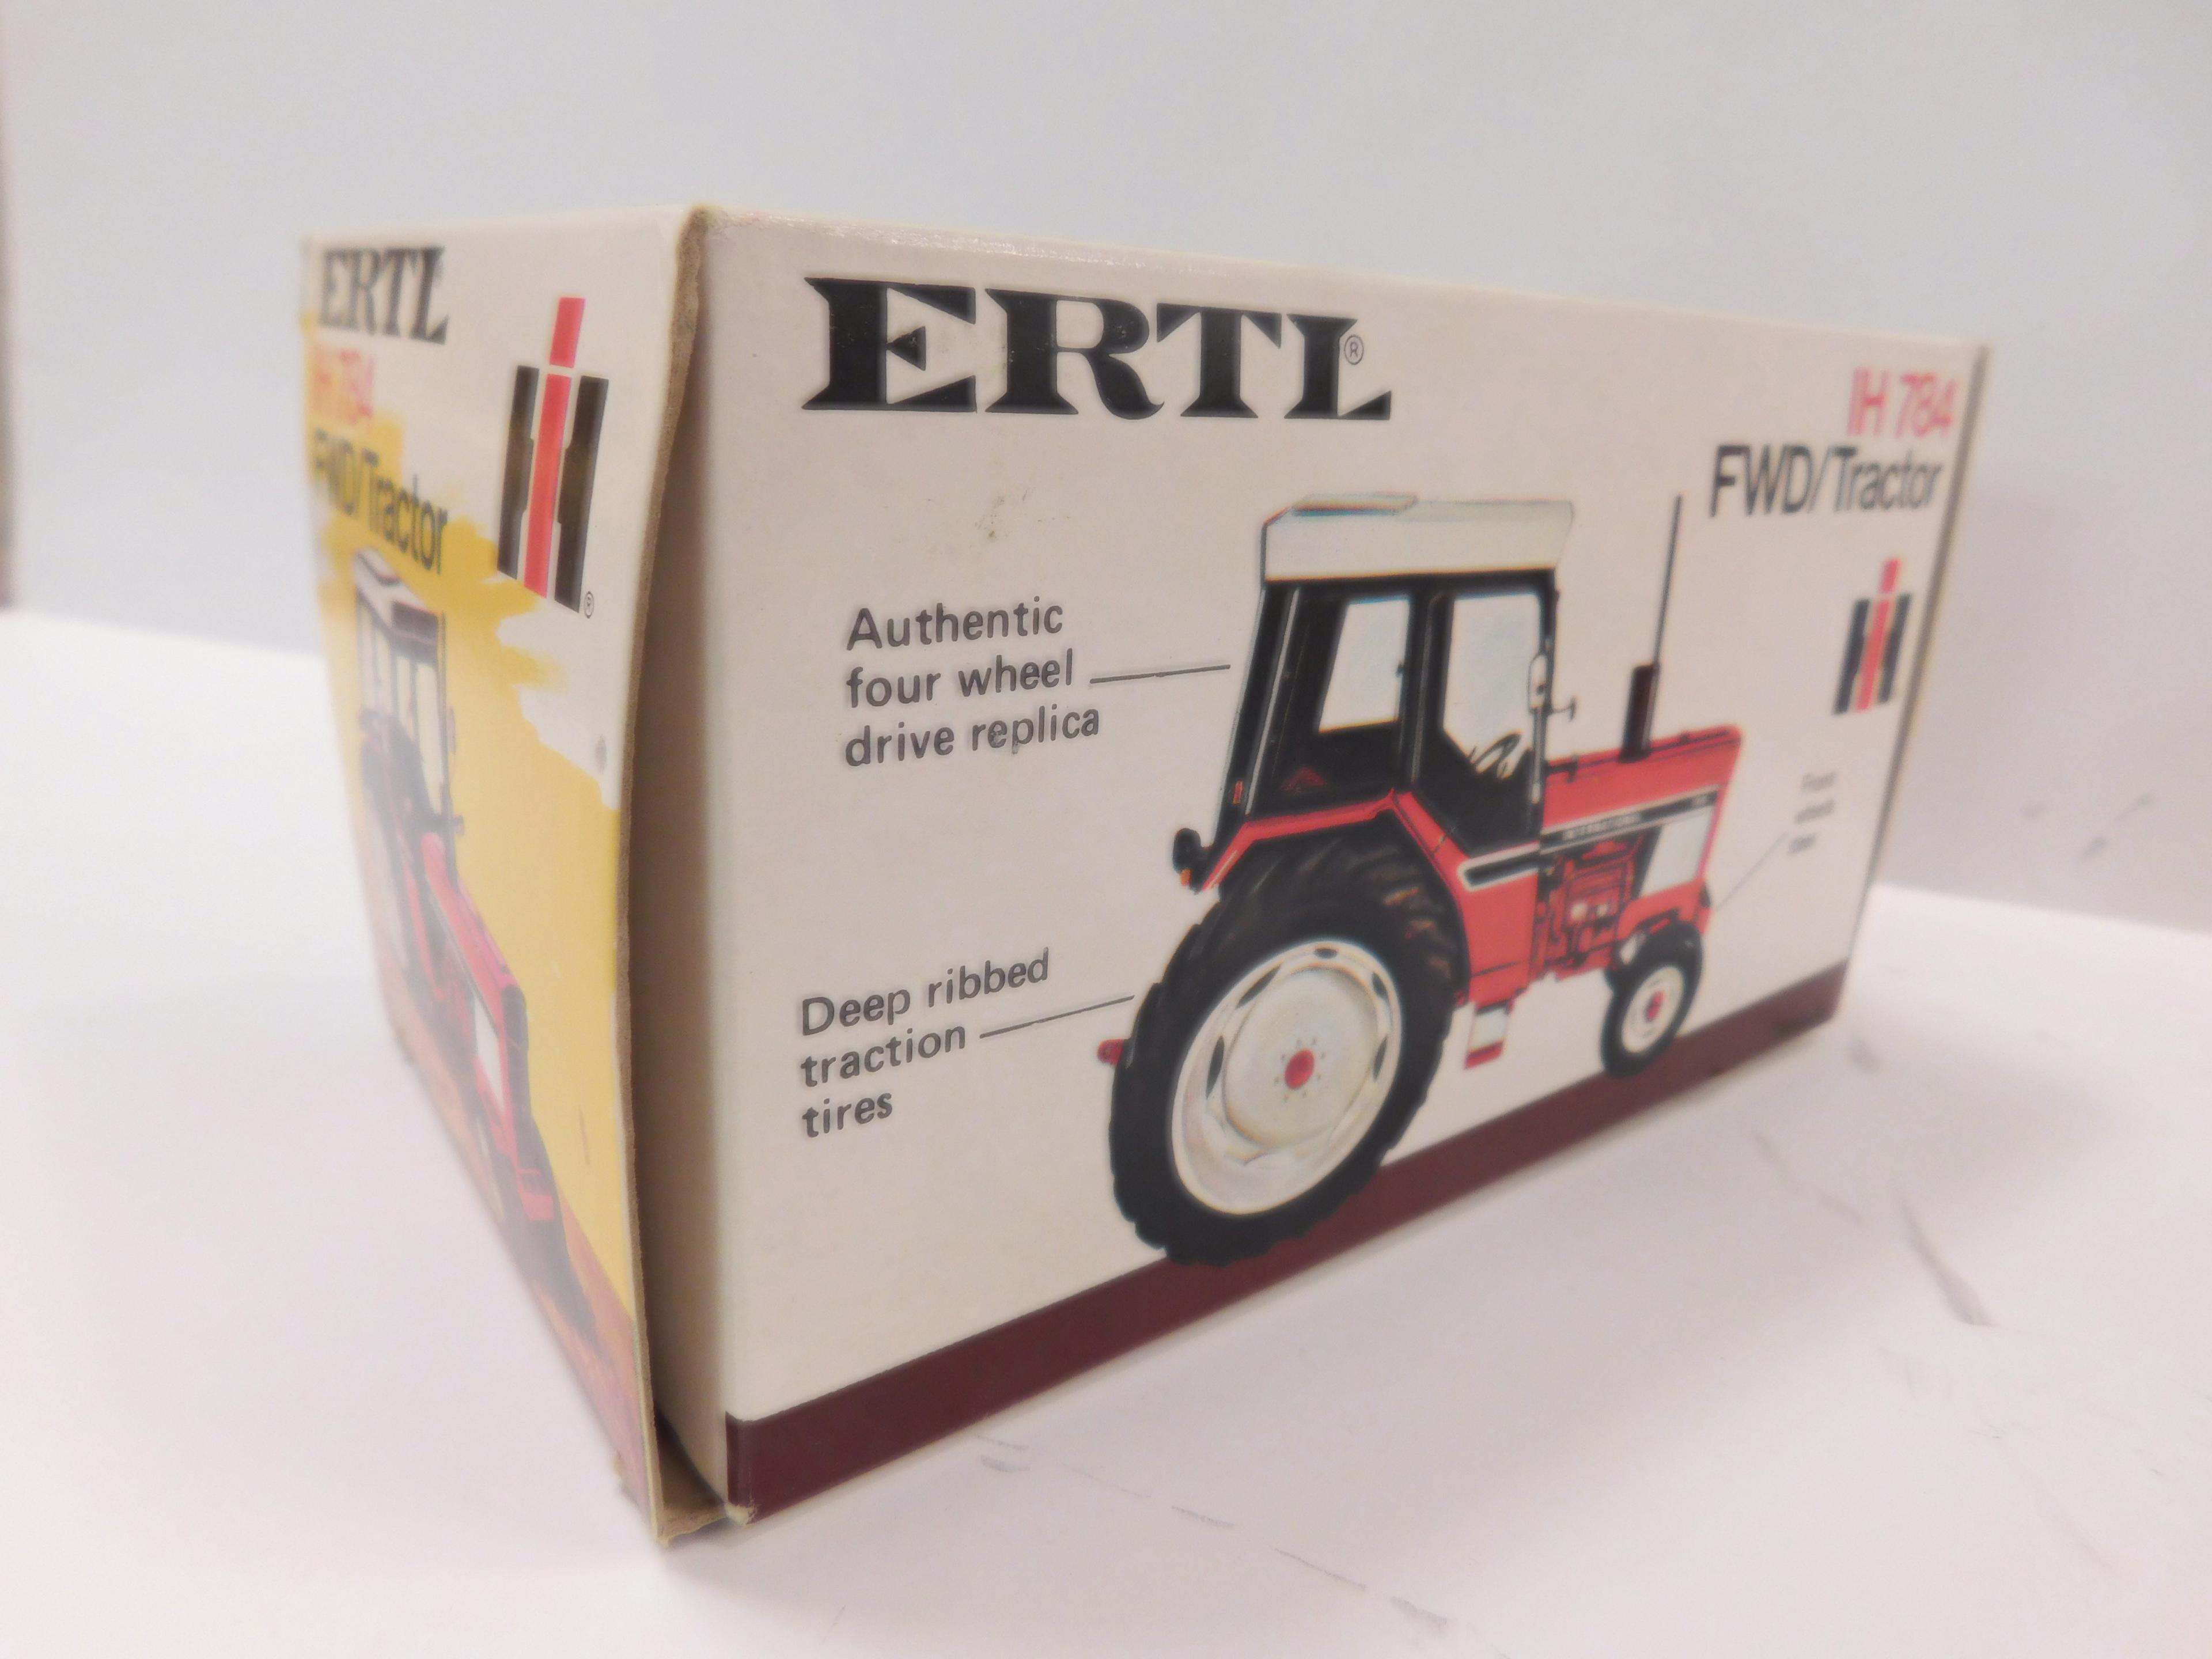 ERTL 1/32 SCALE IH 784 FWD/ TRACTOR & ROUND BALER